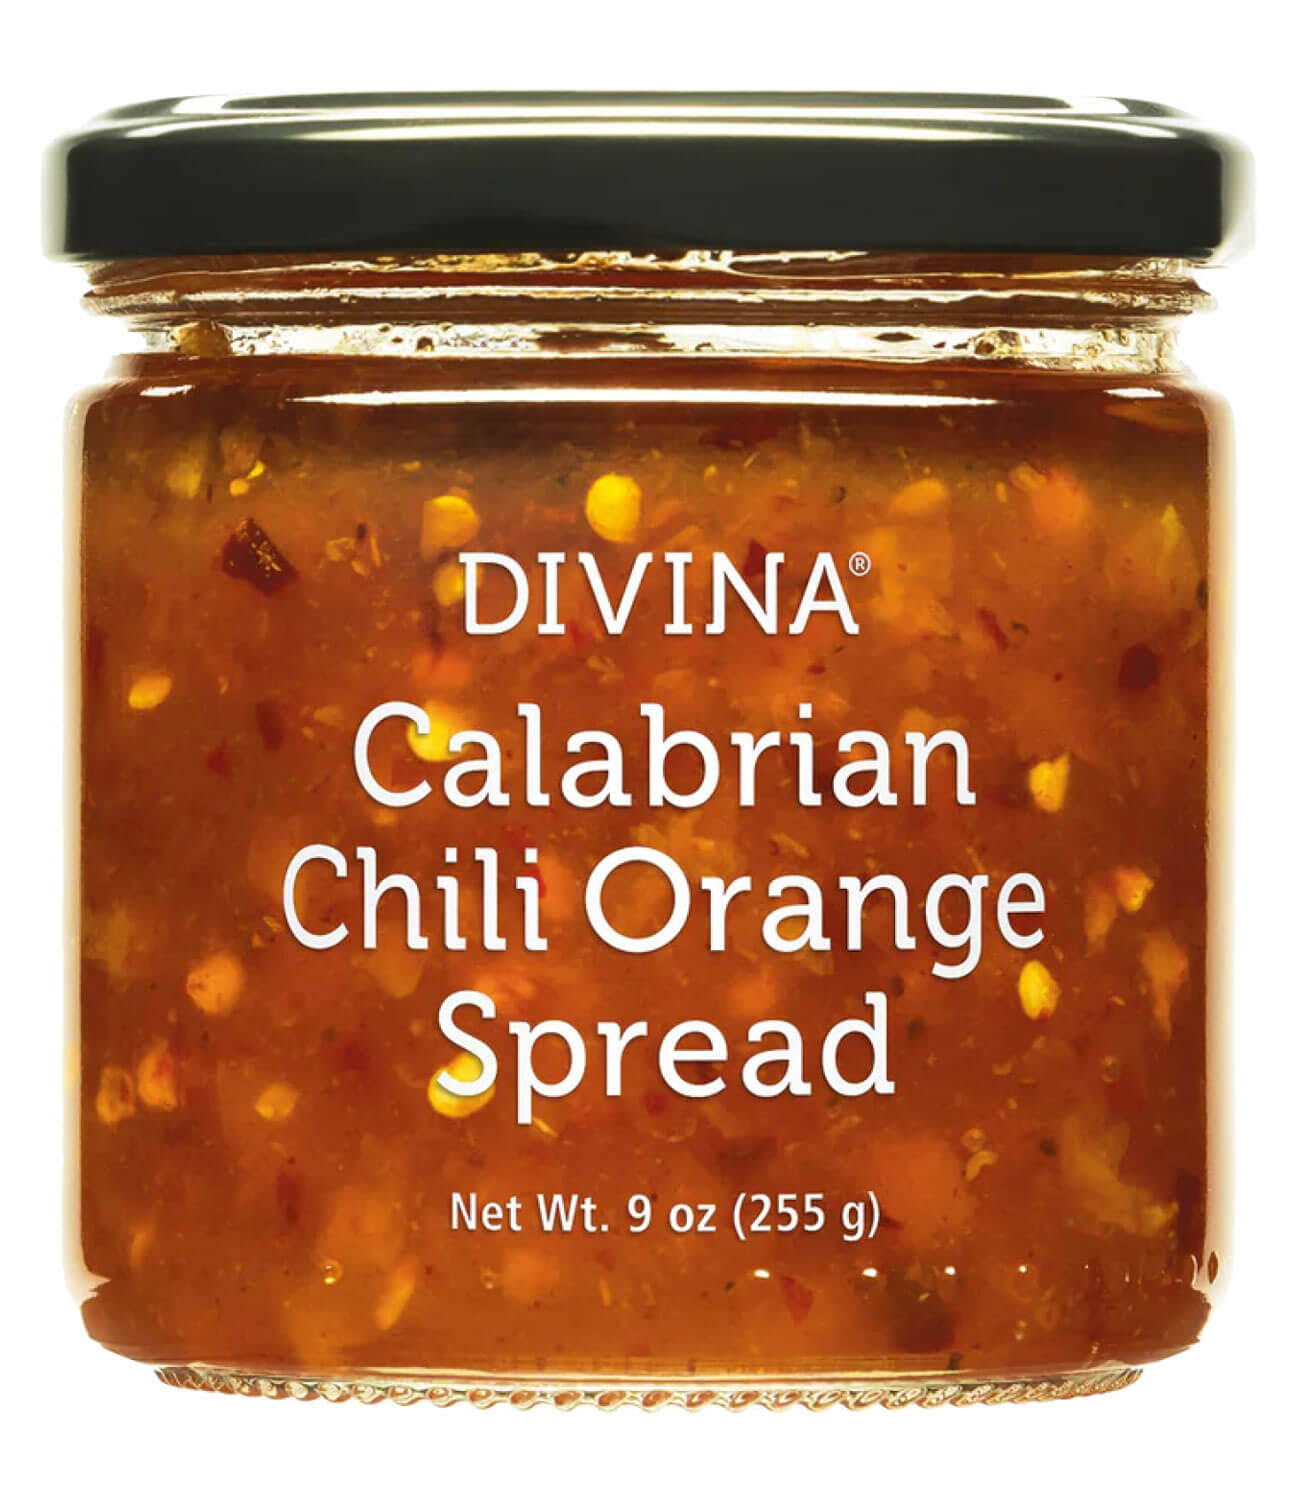 Divina Calabrian Chili Orange Spread - 9 oz